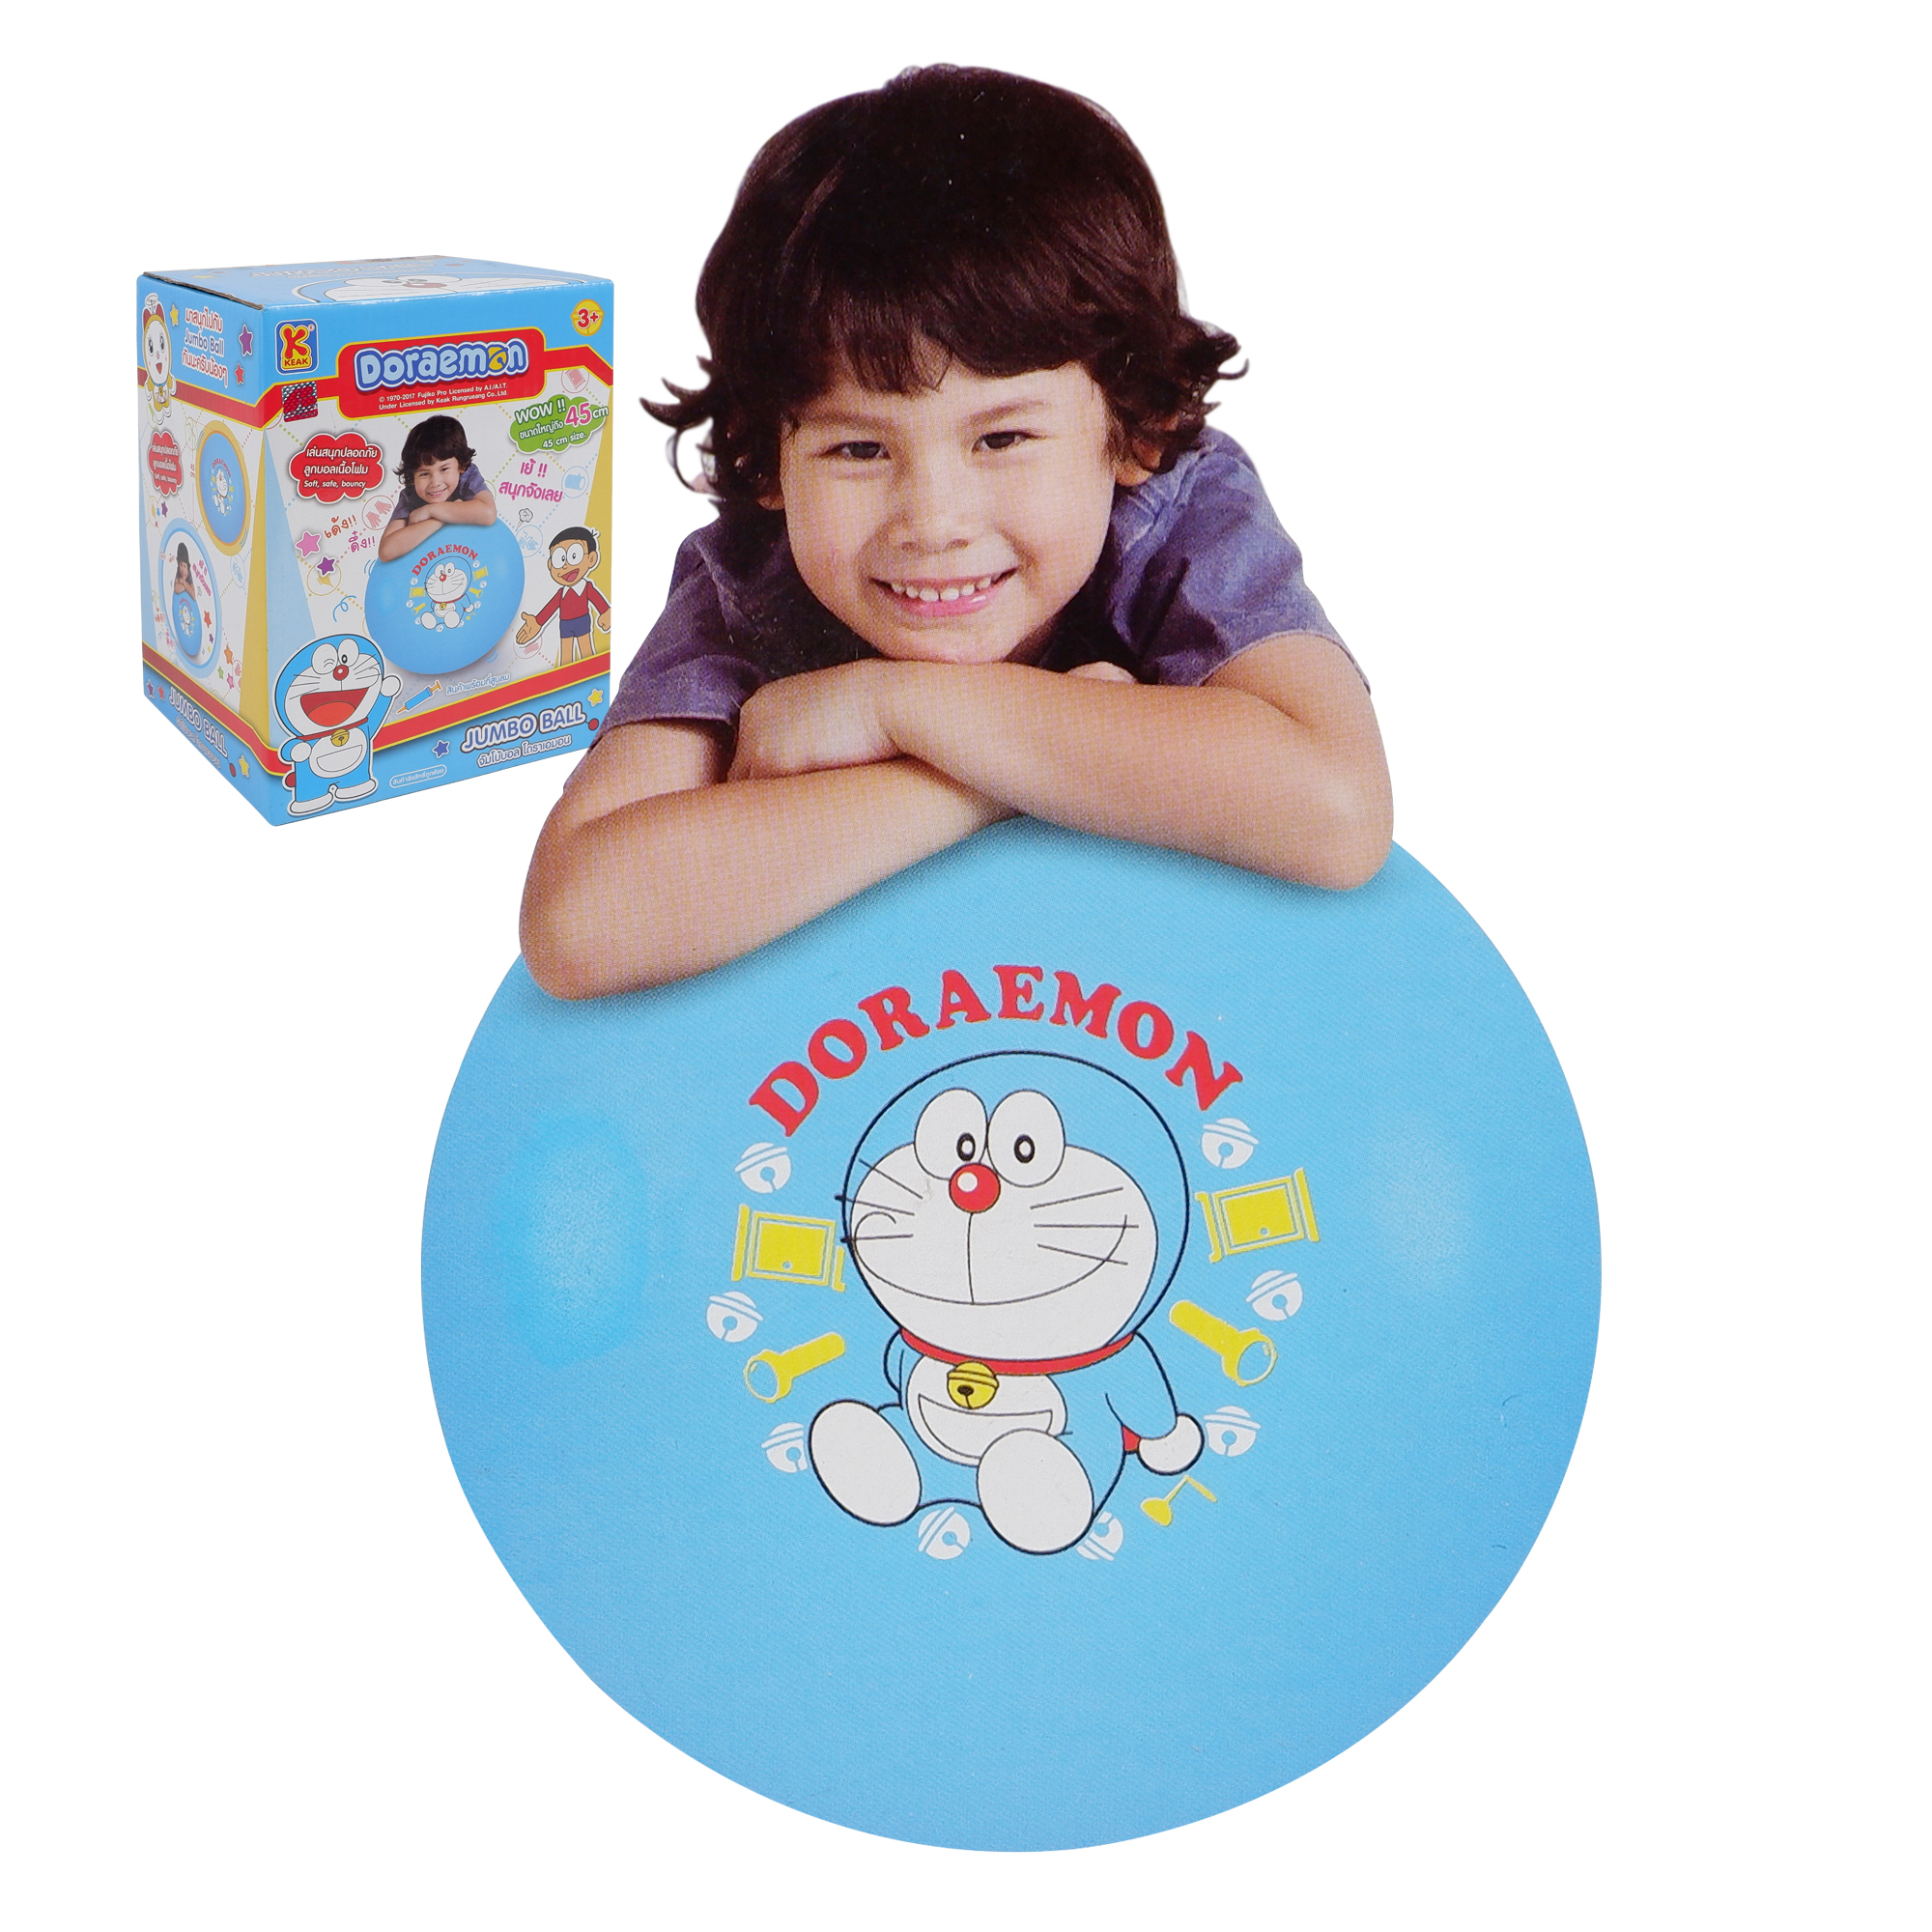 thetoy ของเล่นเด็ก Doraemon จัมโบ้ บอล พร้อมที่ สูบลม สุดน่ารัก ลิขสิทธิ์แท้ เส้นผ่าศูนย์กลาง 45 ซม. ของเล่นเสริมพัฒนาการ และ เสริมทักษะ